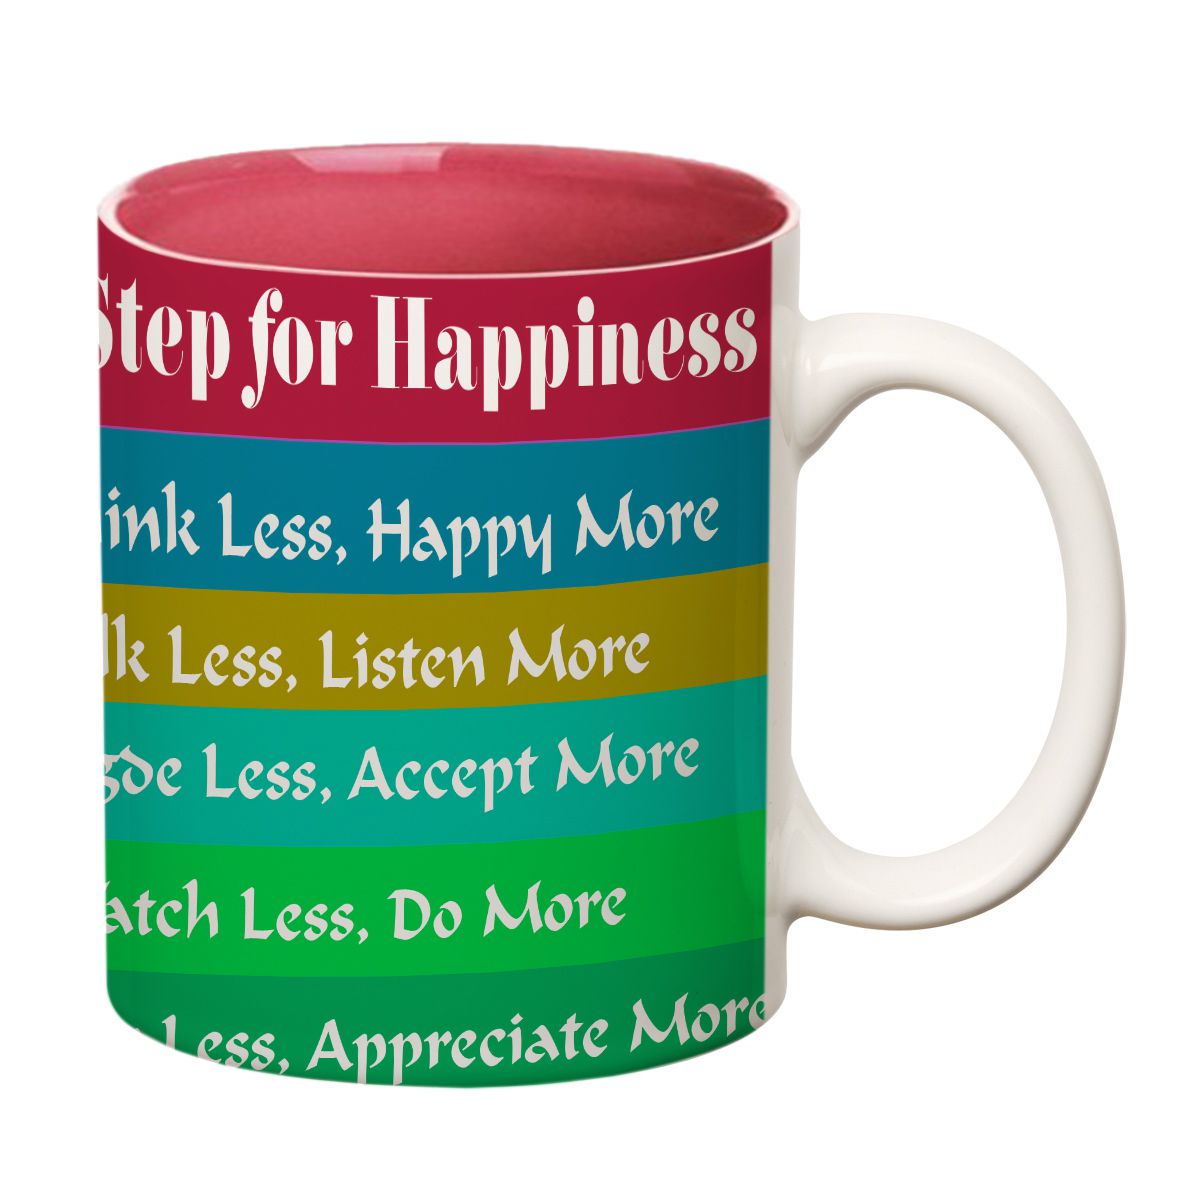 ORKA Coffee Mug Quotes Printed( Step For Happiness) Theme 11 Oz   